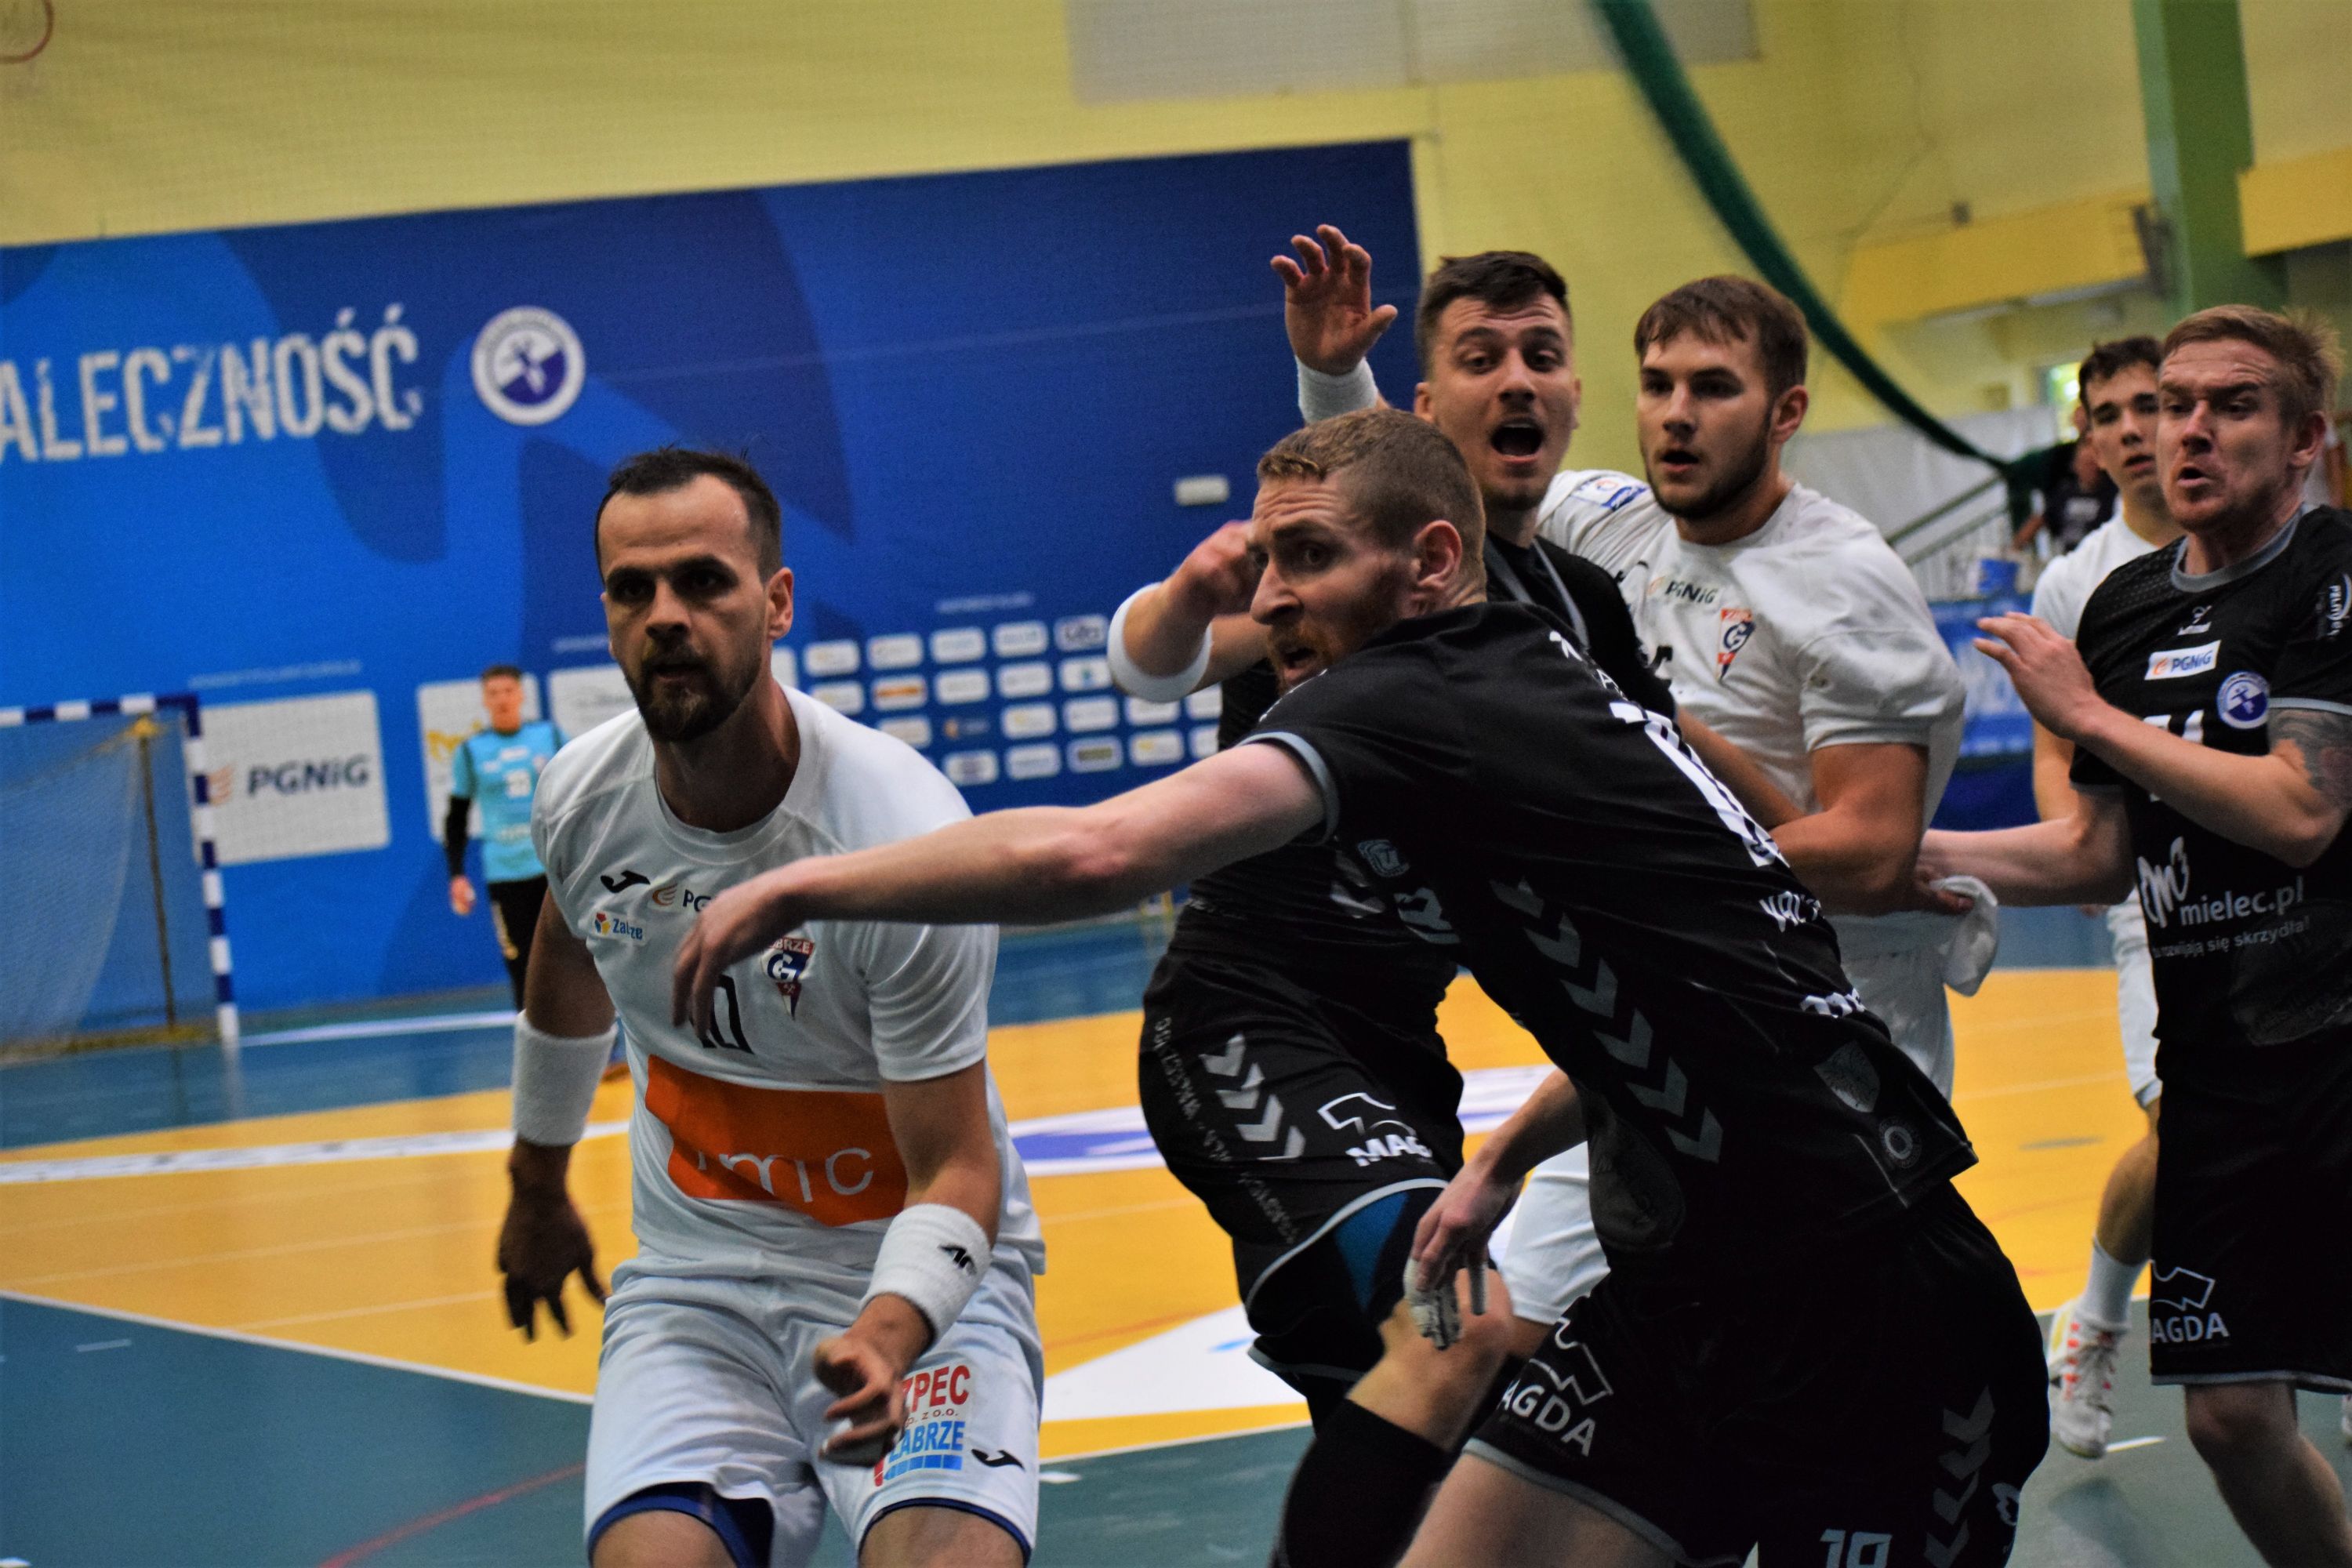 Wciąż trwa zła passa Handball Stal Mielec [GALERIA] - Zdjęcie główne